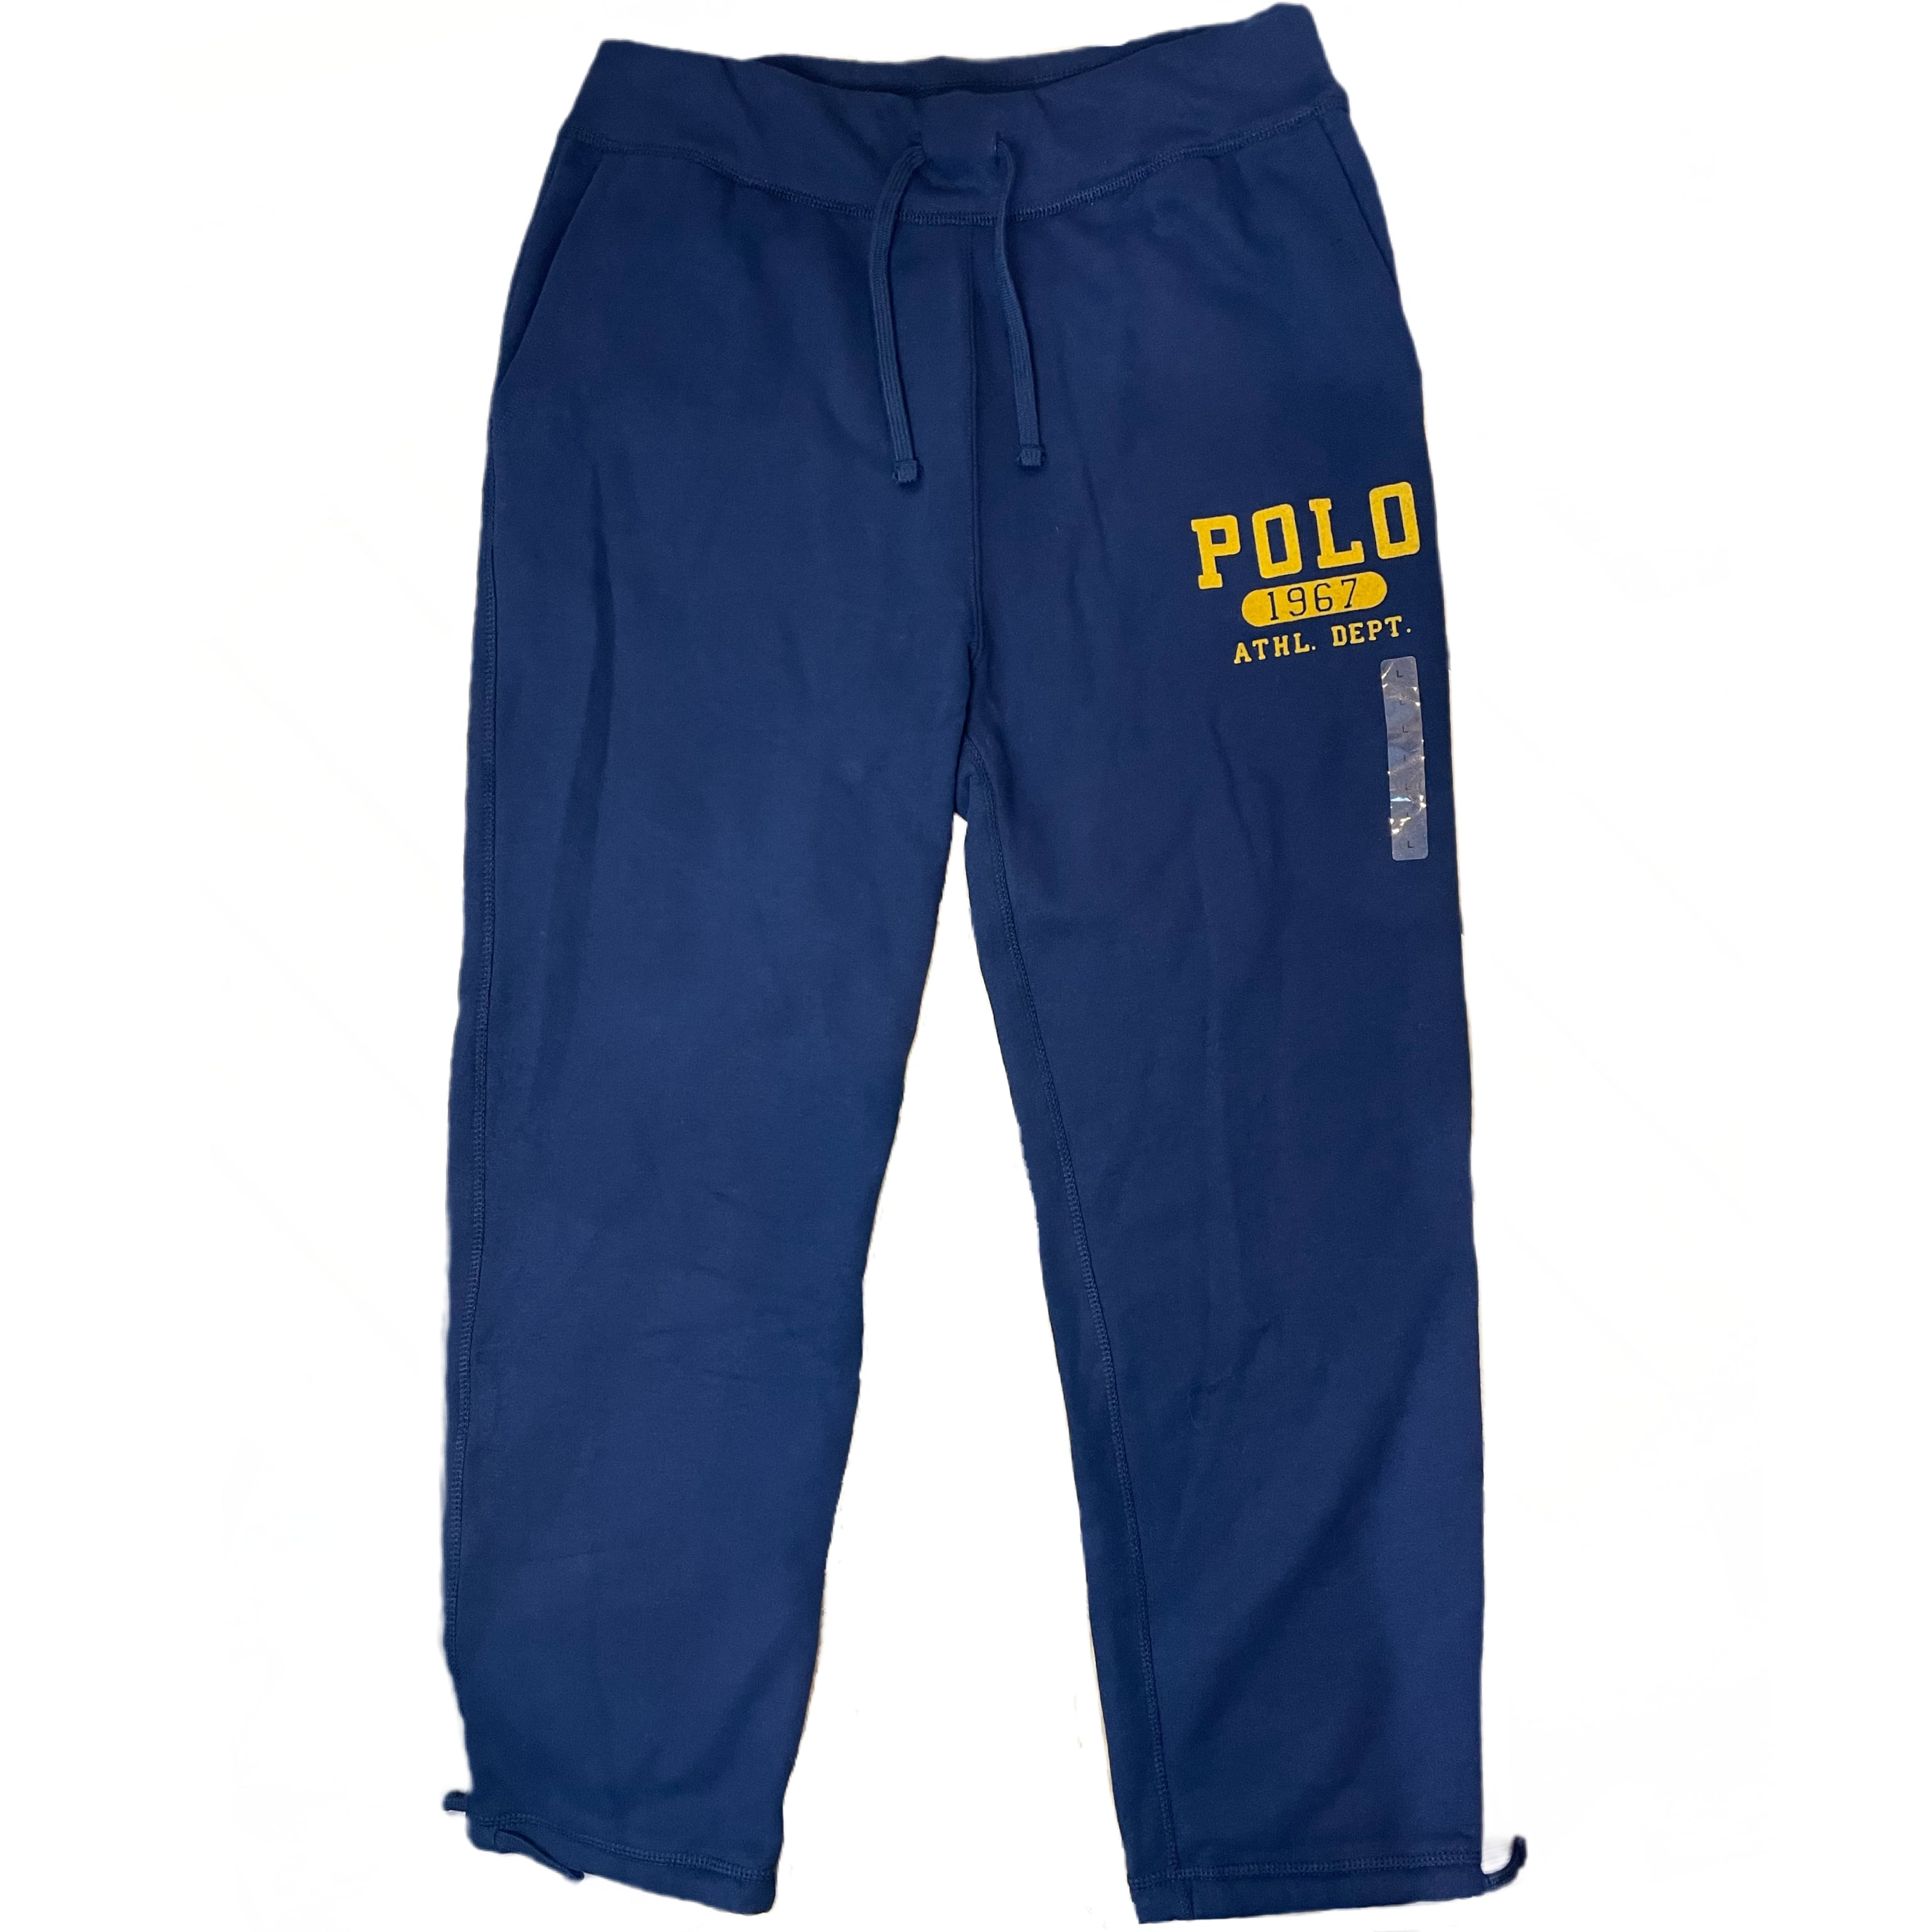 Polo Ralph Lauren 1967 Athletic Department Sweat Pants | M＆M